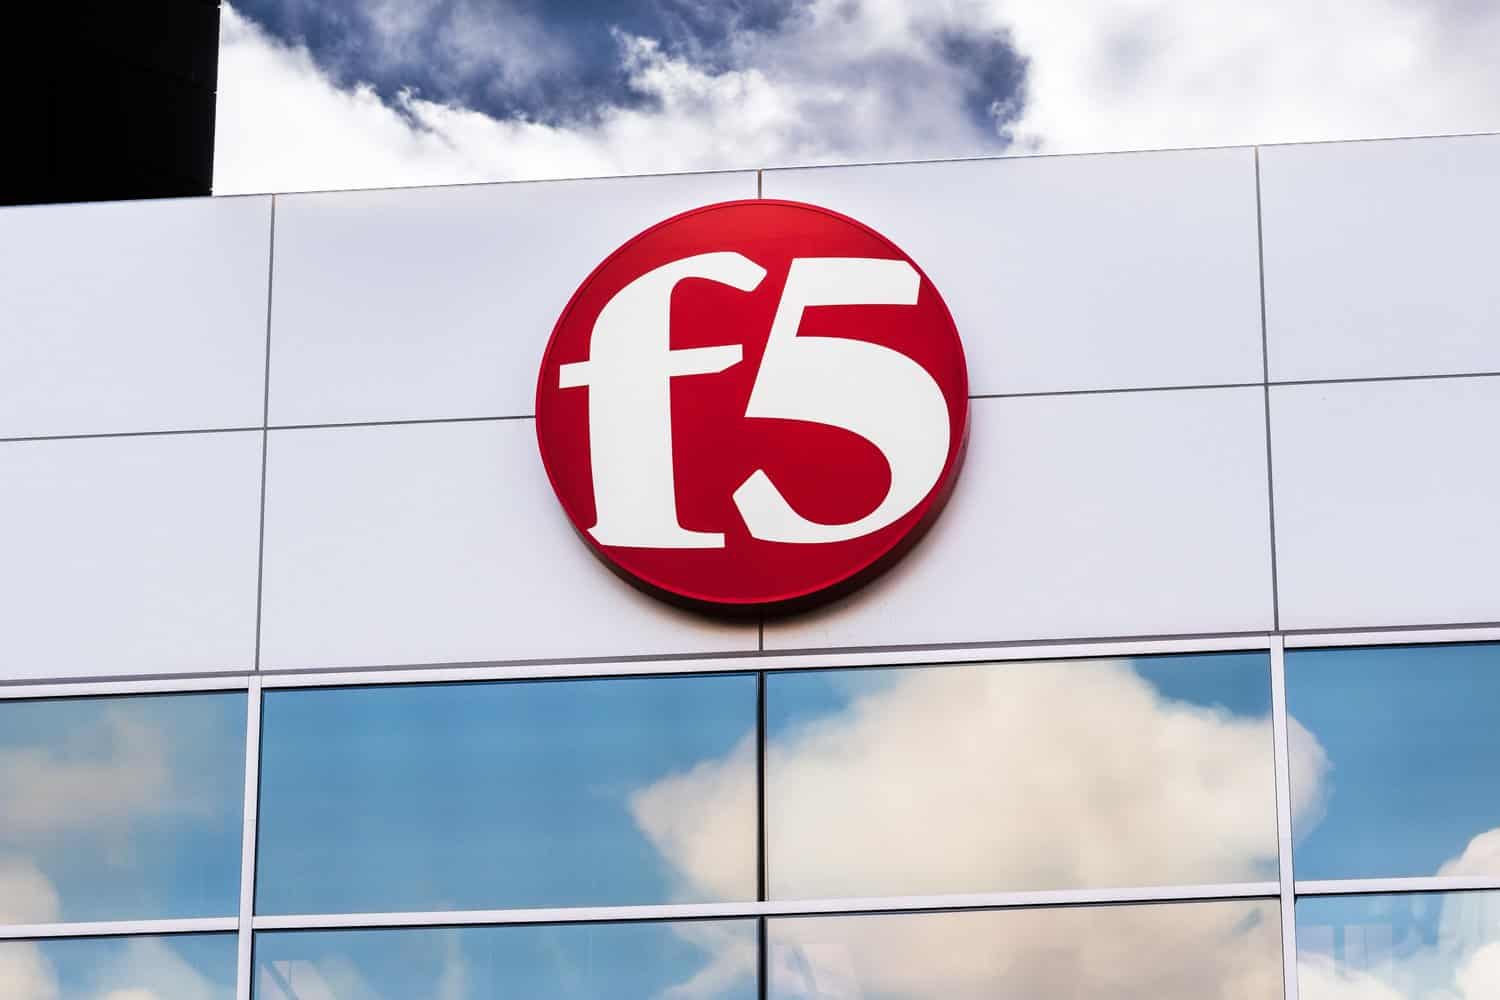 ثغرة أمنية خطيرة في منتجات F5